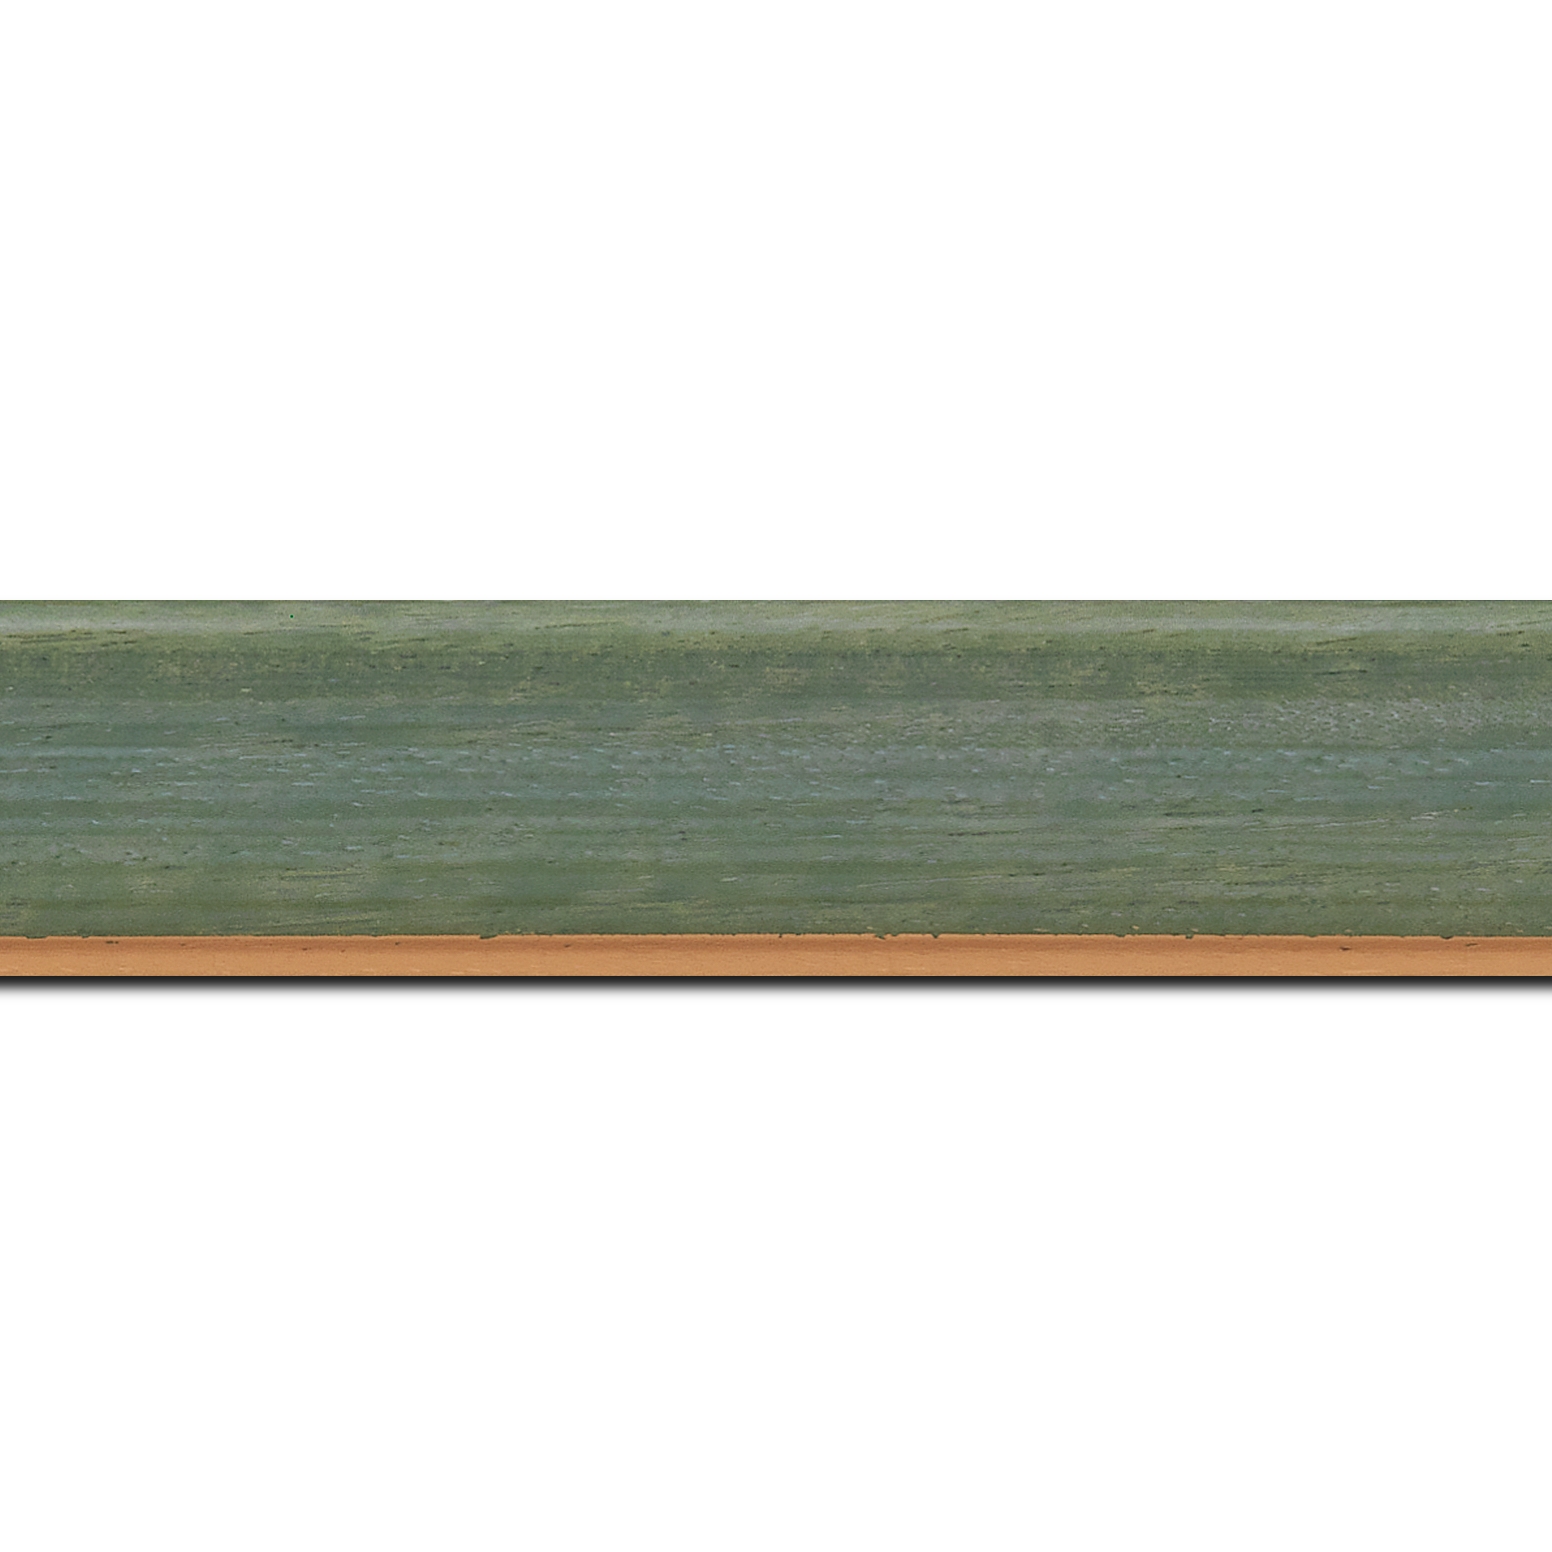 Pack par 12m, bois profil incurvé largeur 3.9cm couleur vert amande satiné filet or (longueur baguette pouvant varier entre 2.40m et 3m selon arrivage des bois)